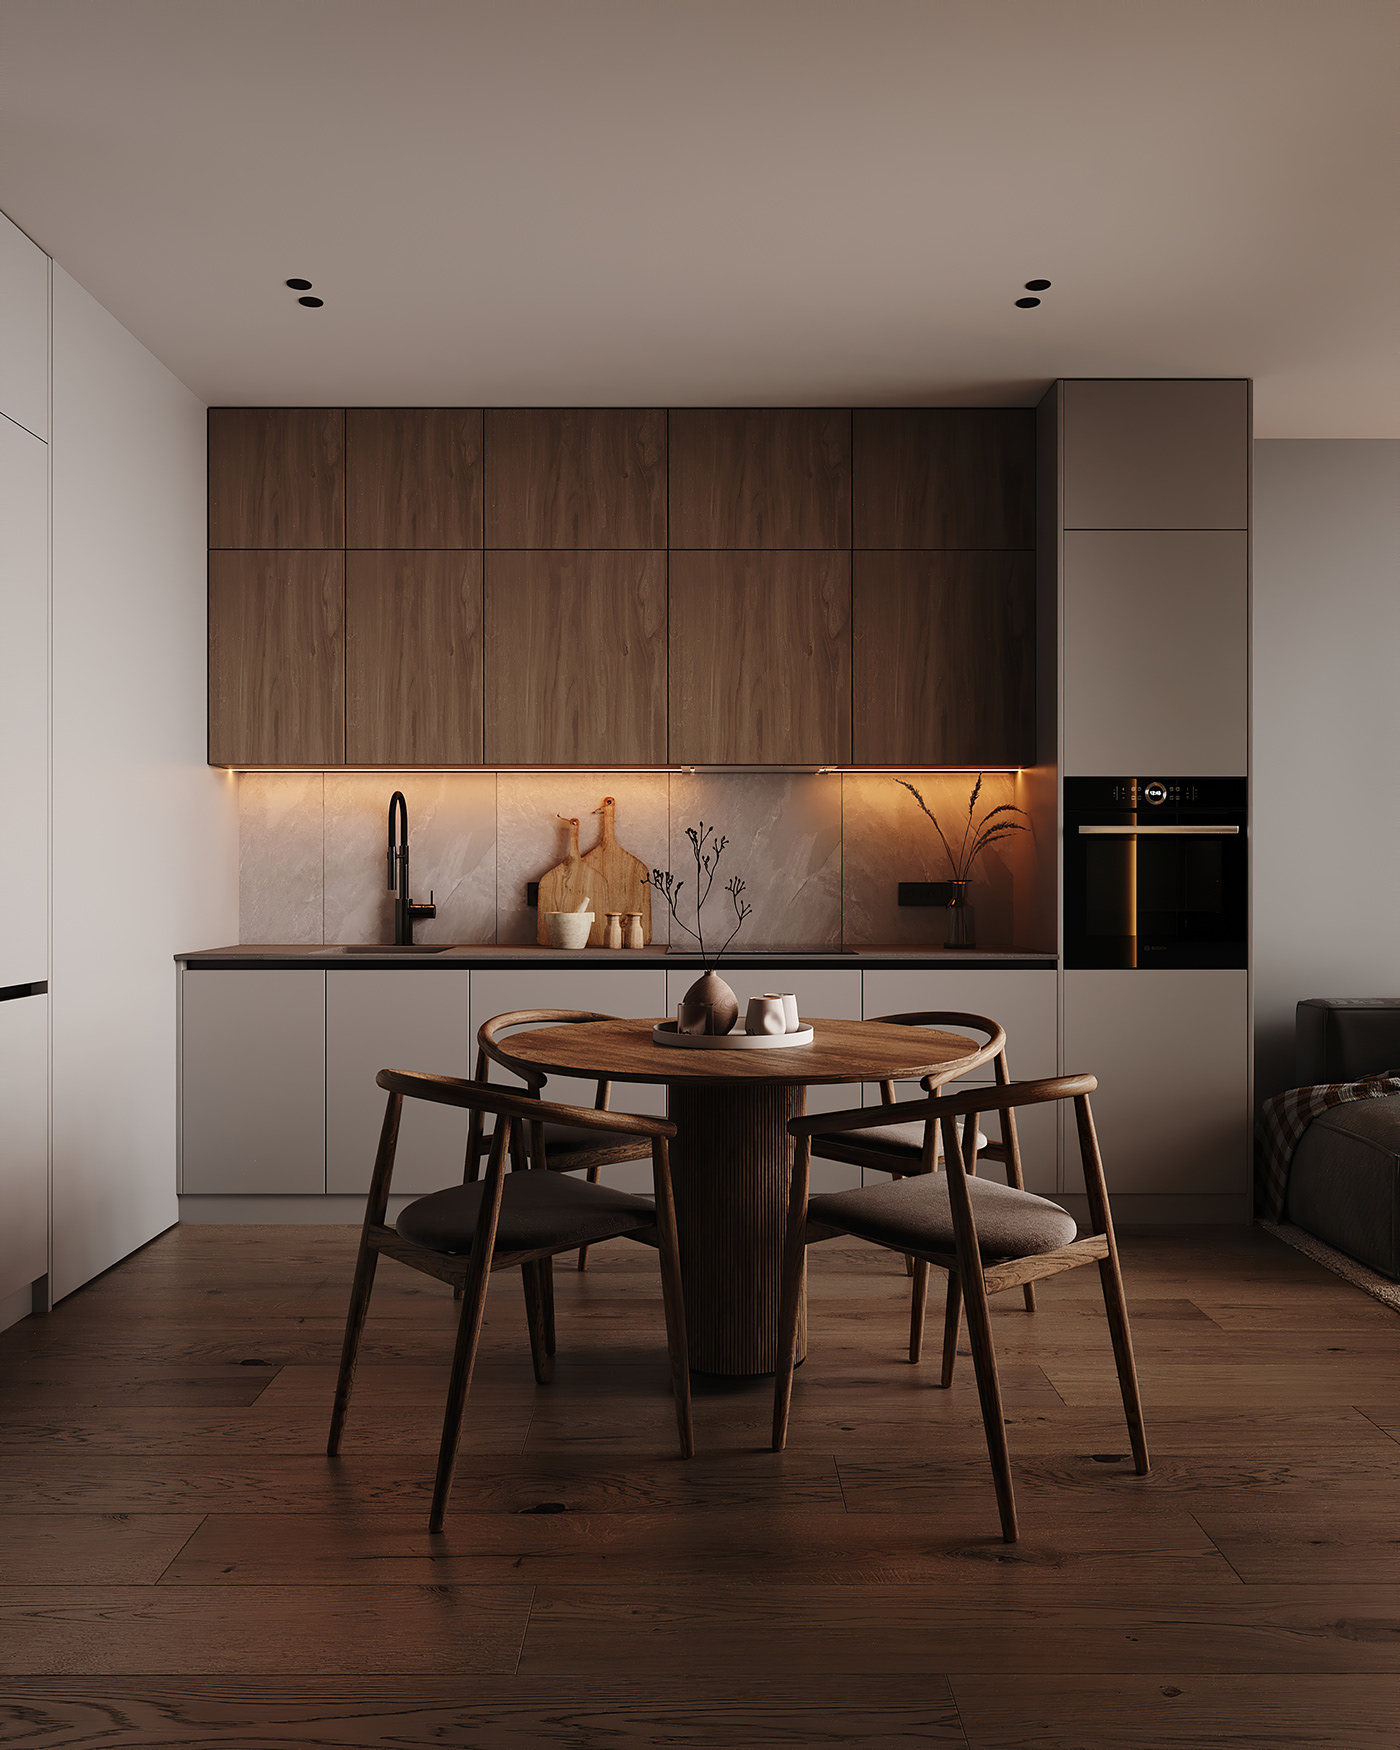 3ds max apartment architecture interior design  exterior interior designer Interior Project visualization